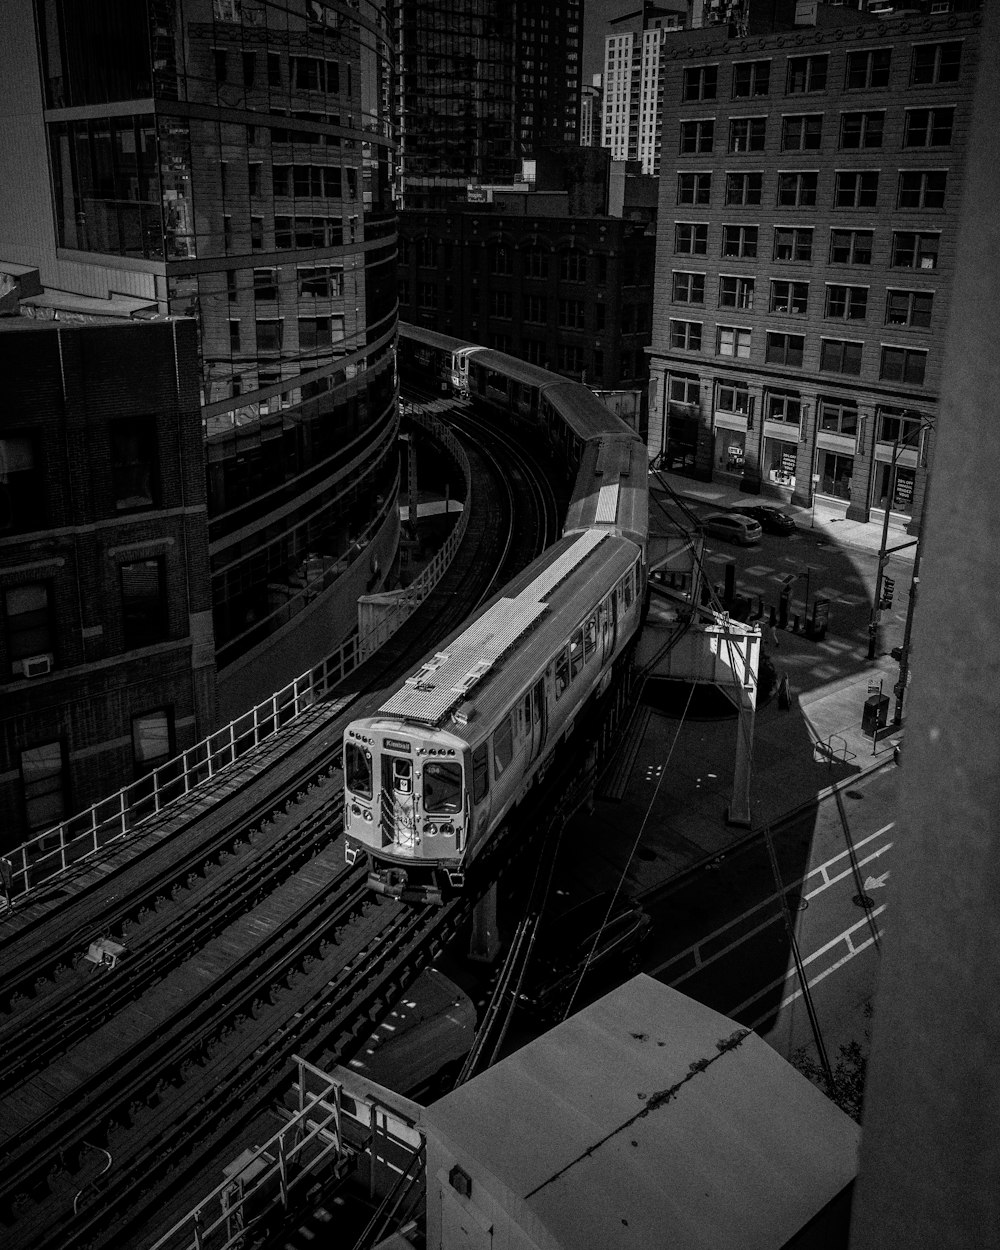 Una foto en blanco y negro de un tren en una ciudad